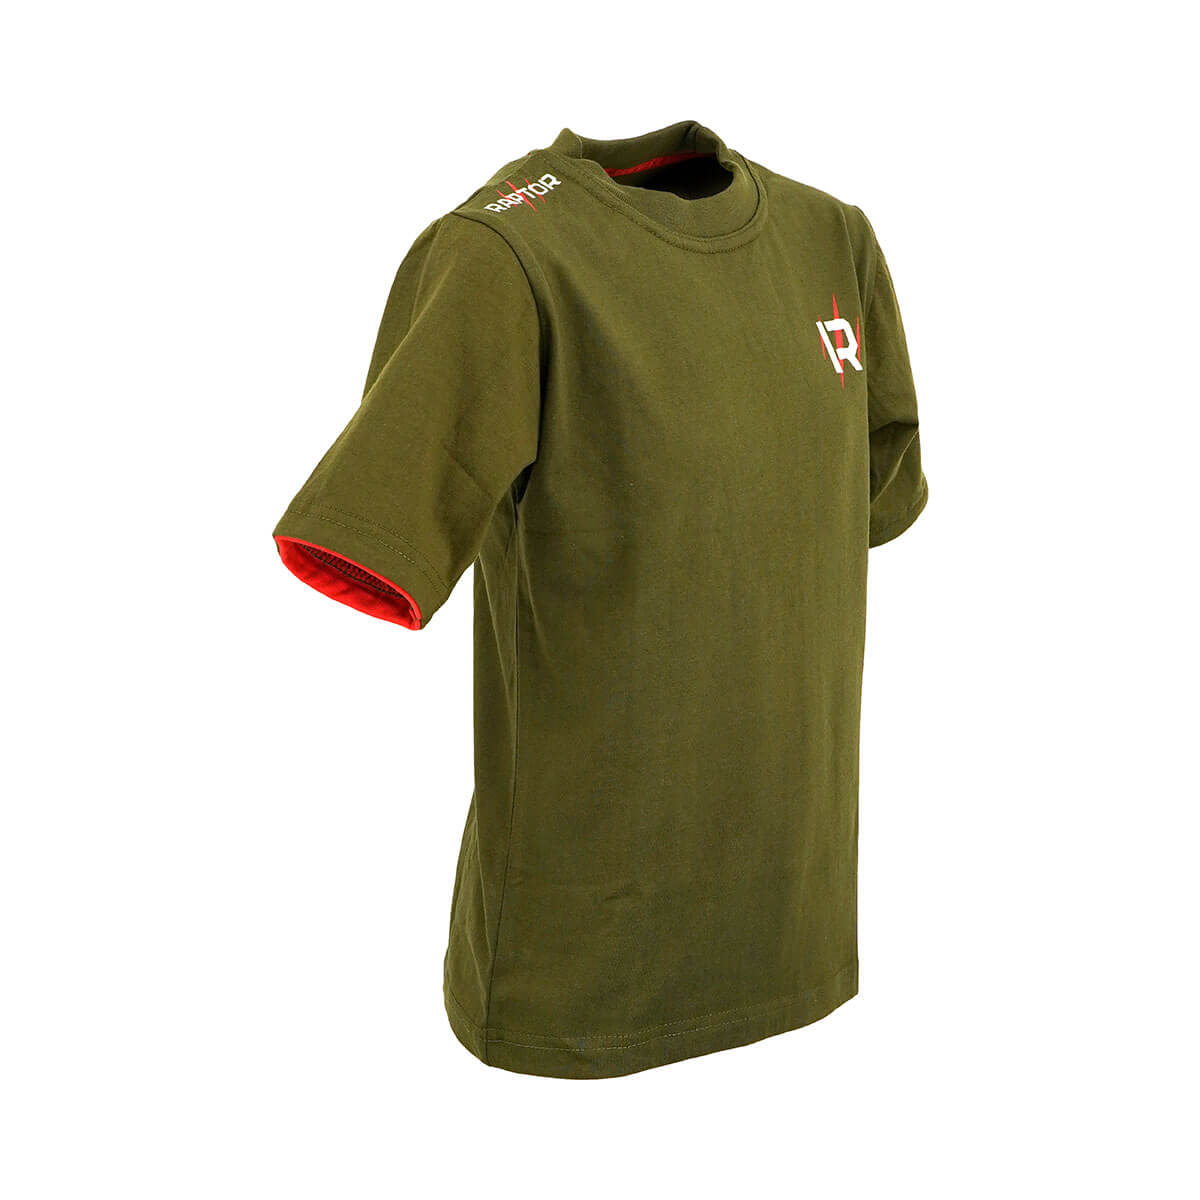 Raptor T-shirt Olijfgroen/Rood - 140 / 10 jaar